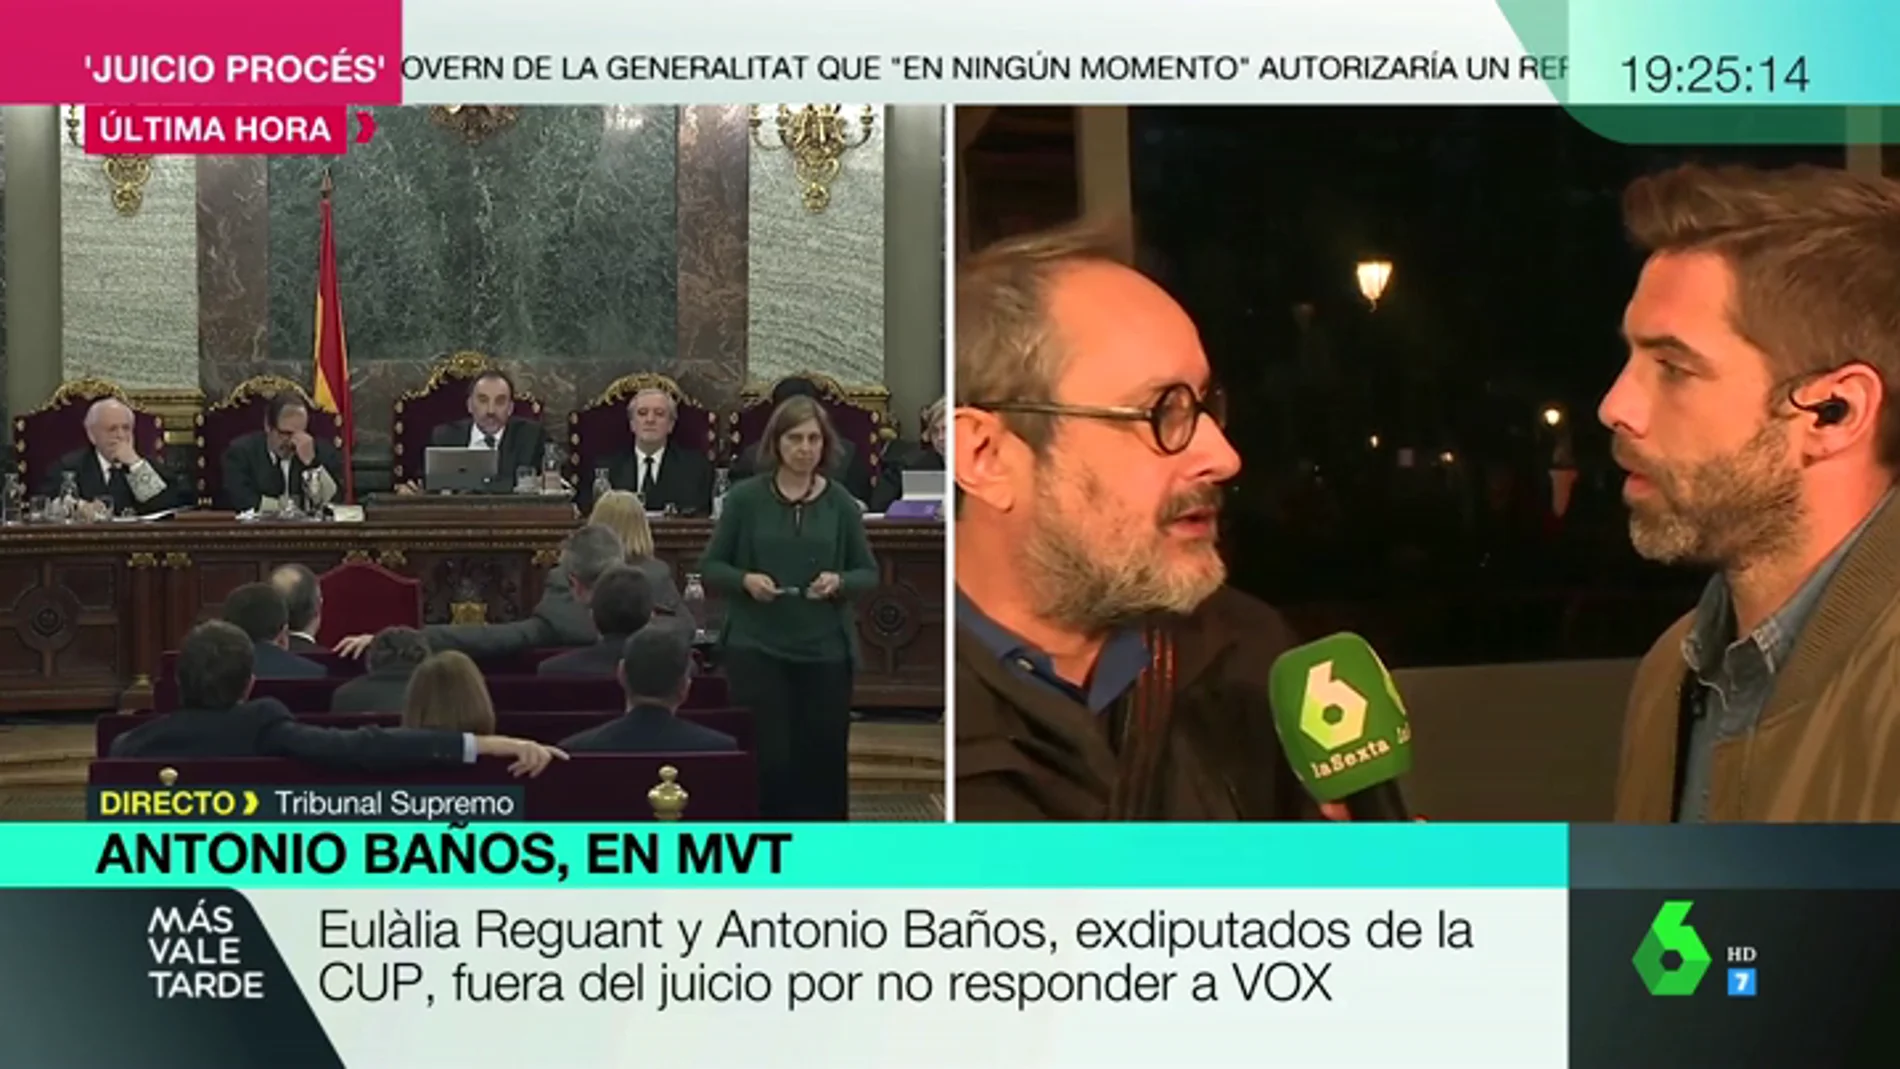 Antonio Baños defiende no haber respondido a Vox en el juicio del 'procés' "por respeto a la lucha feminista, LGTBI y a los derechos democráticos"